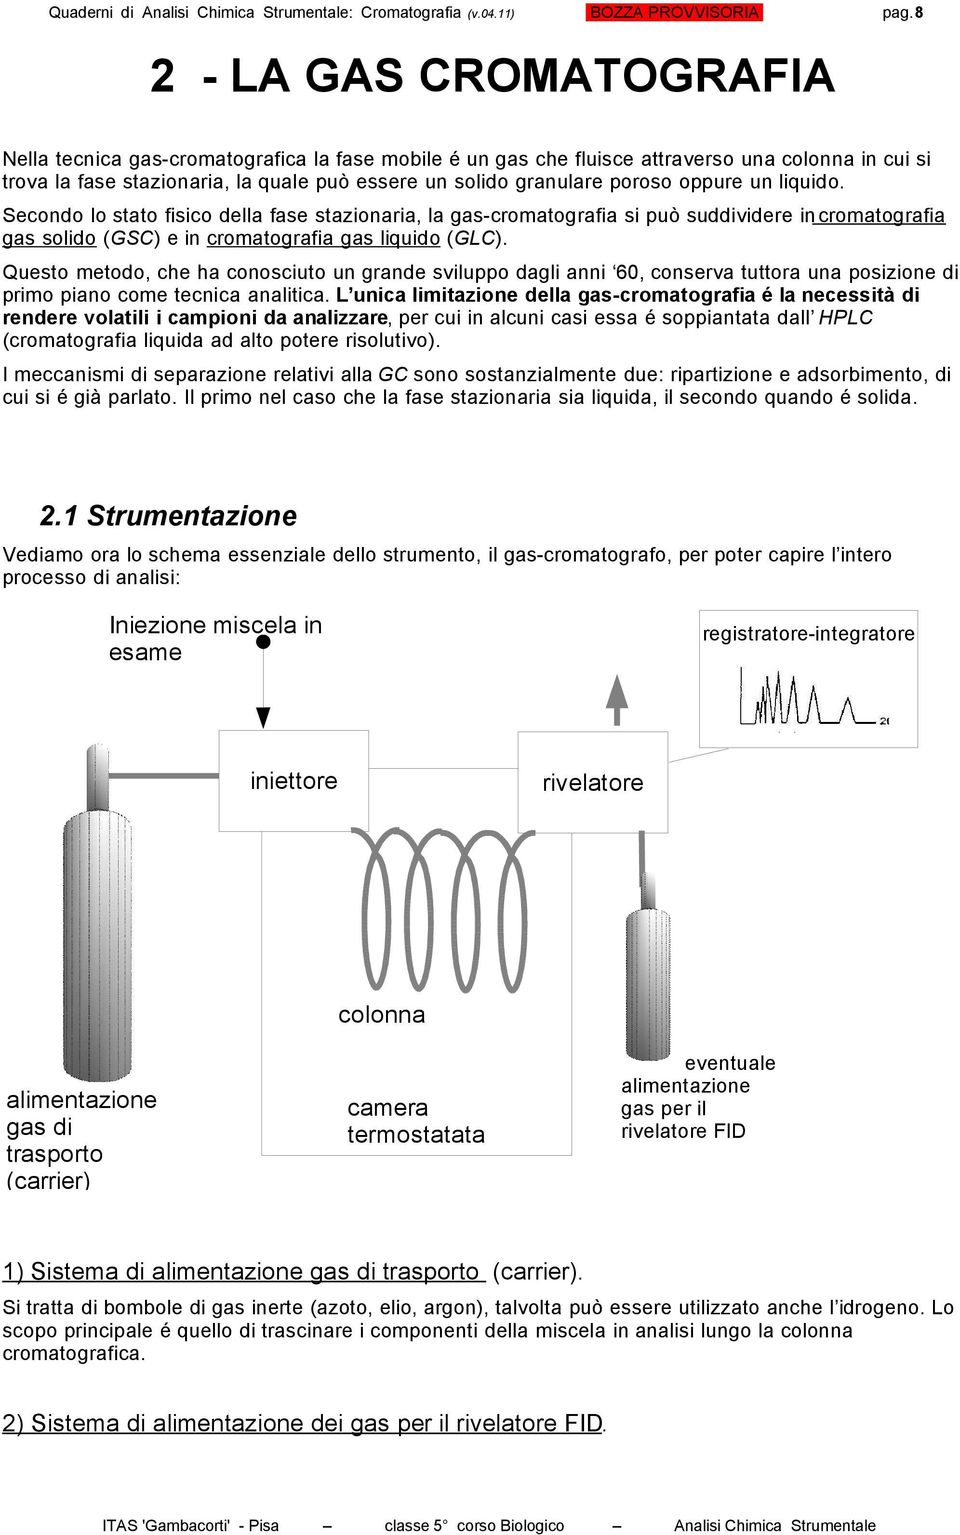 oppure un liquido. Secondo lo stato fisico della fase stazionaria, la gas-cromatografia si può suddividere in cromatografia gas solido (GSC) e in cromatografia gas liquido (GLC).